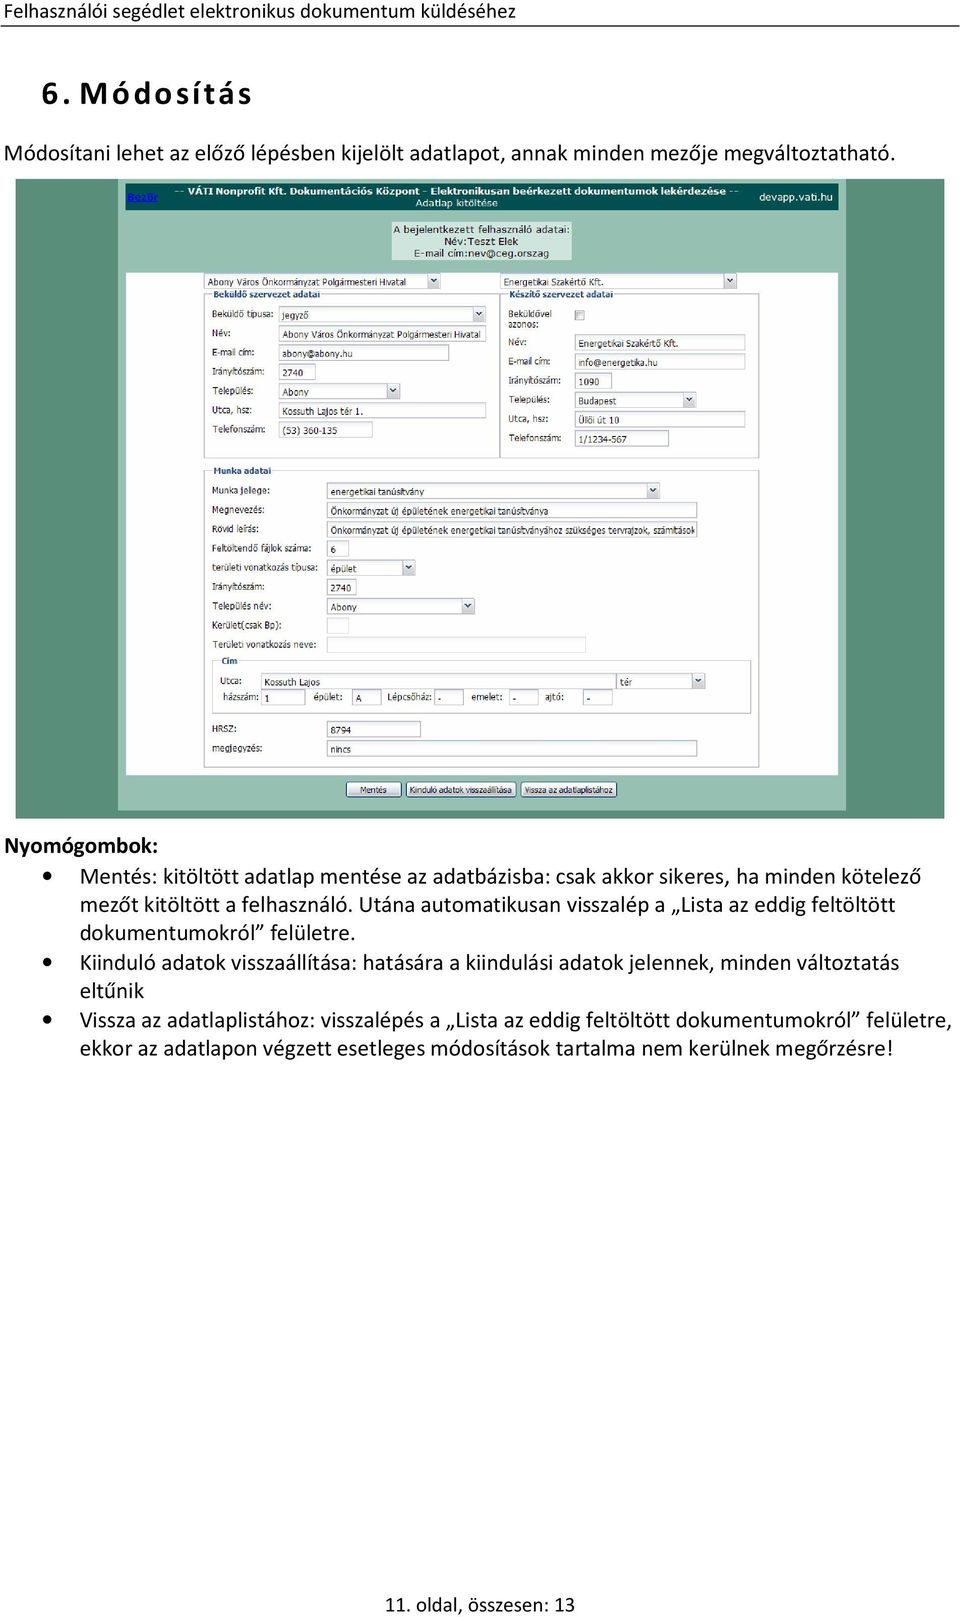 VÁTI Nonprofit Kft. Dokumentációs Központ Felhasználói segédlet  elektronikus dokumentum küldéséhez - PDF Free Download